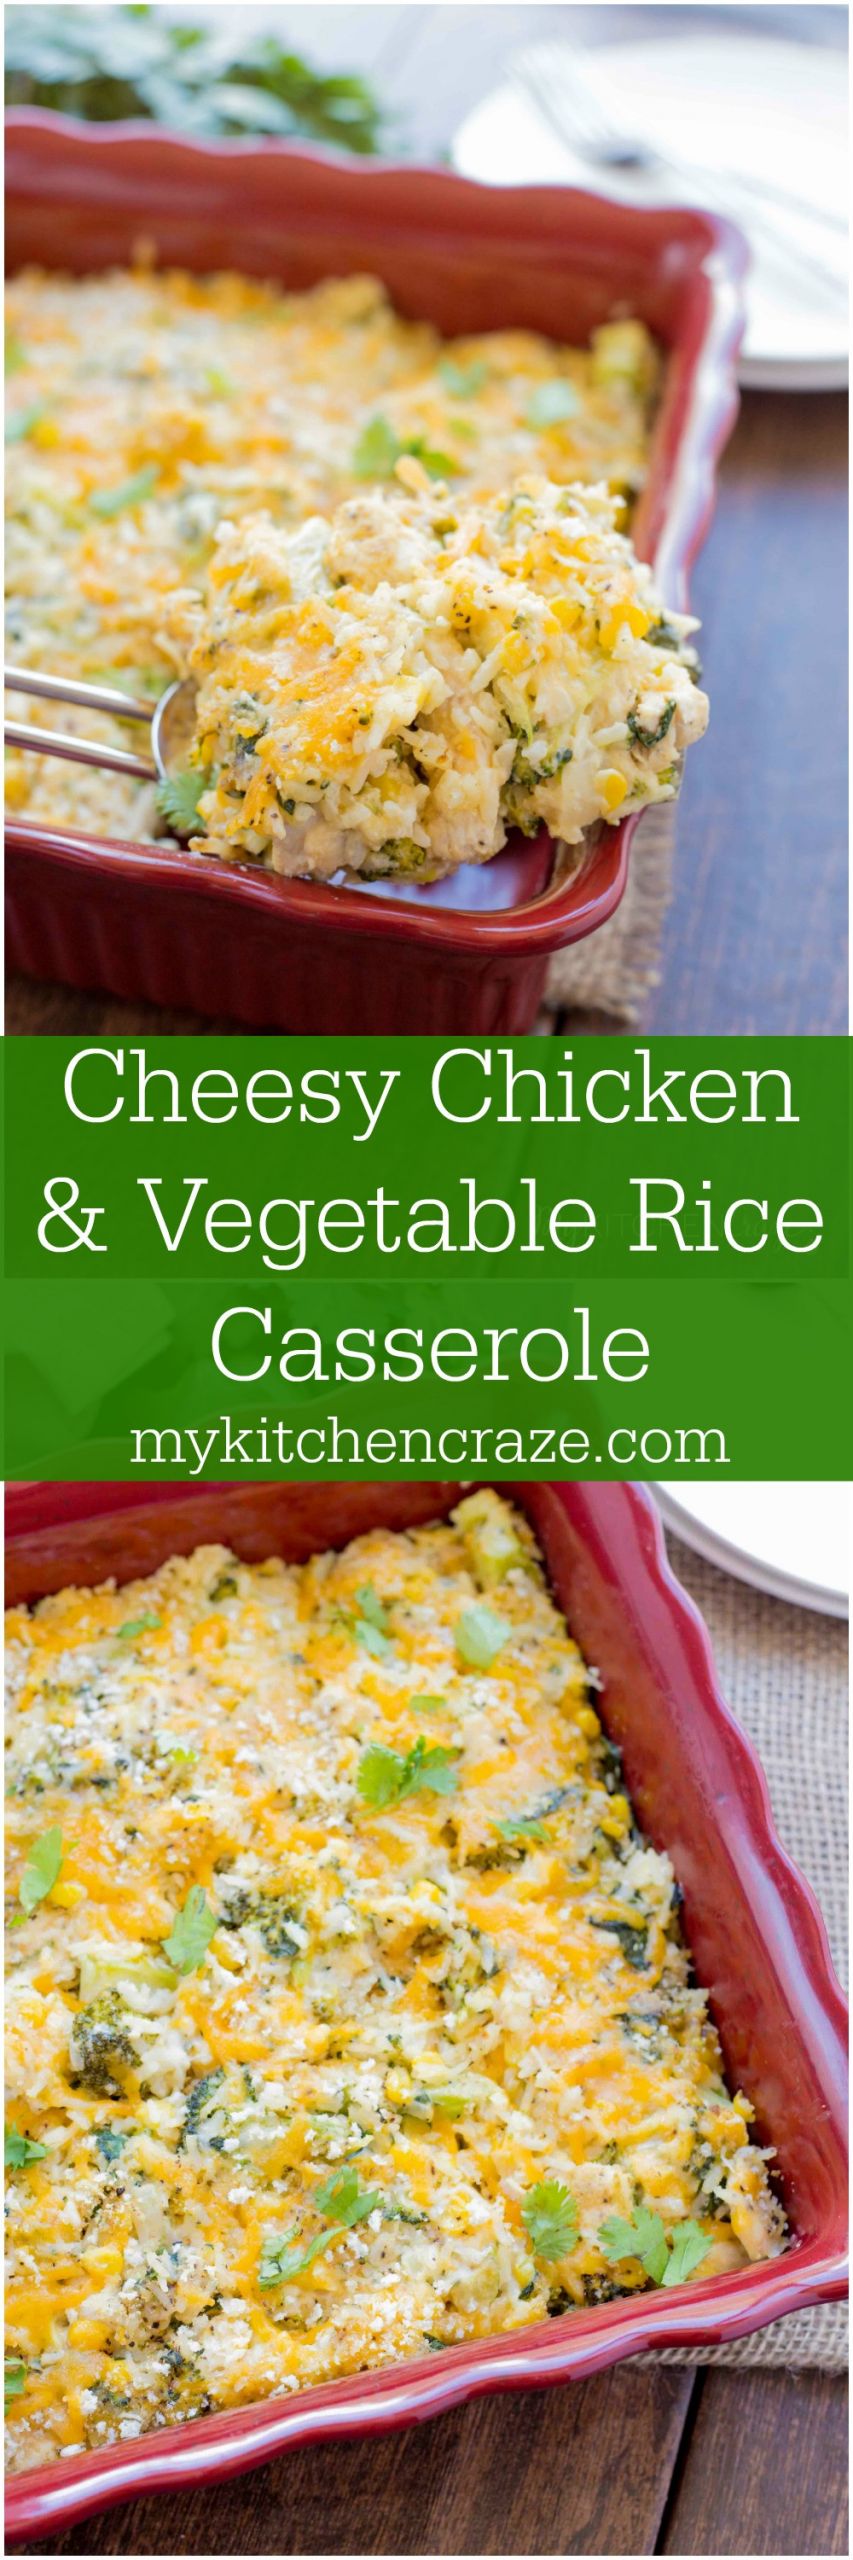 Cheesy Chicken And Rice Casserole Recipe
 Ve able and Cheesy Chicken Rice Casserole My Kitchen Craze